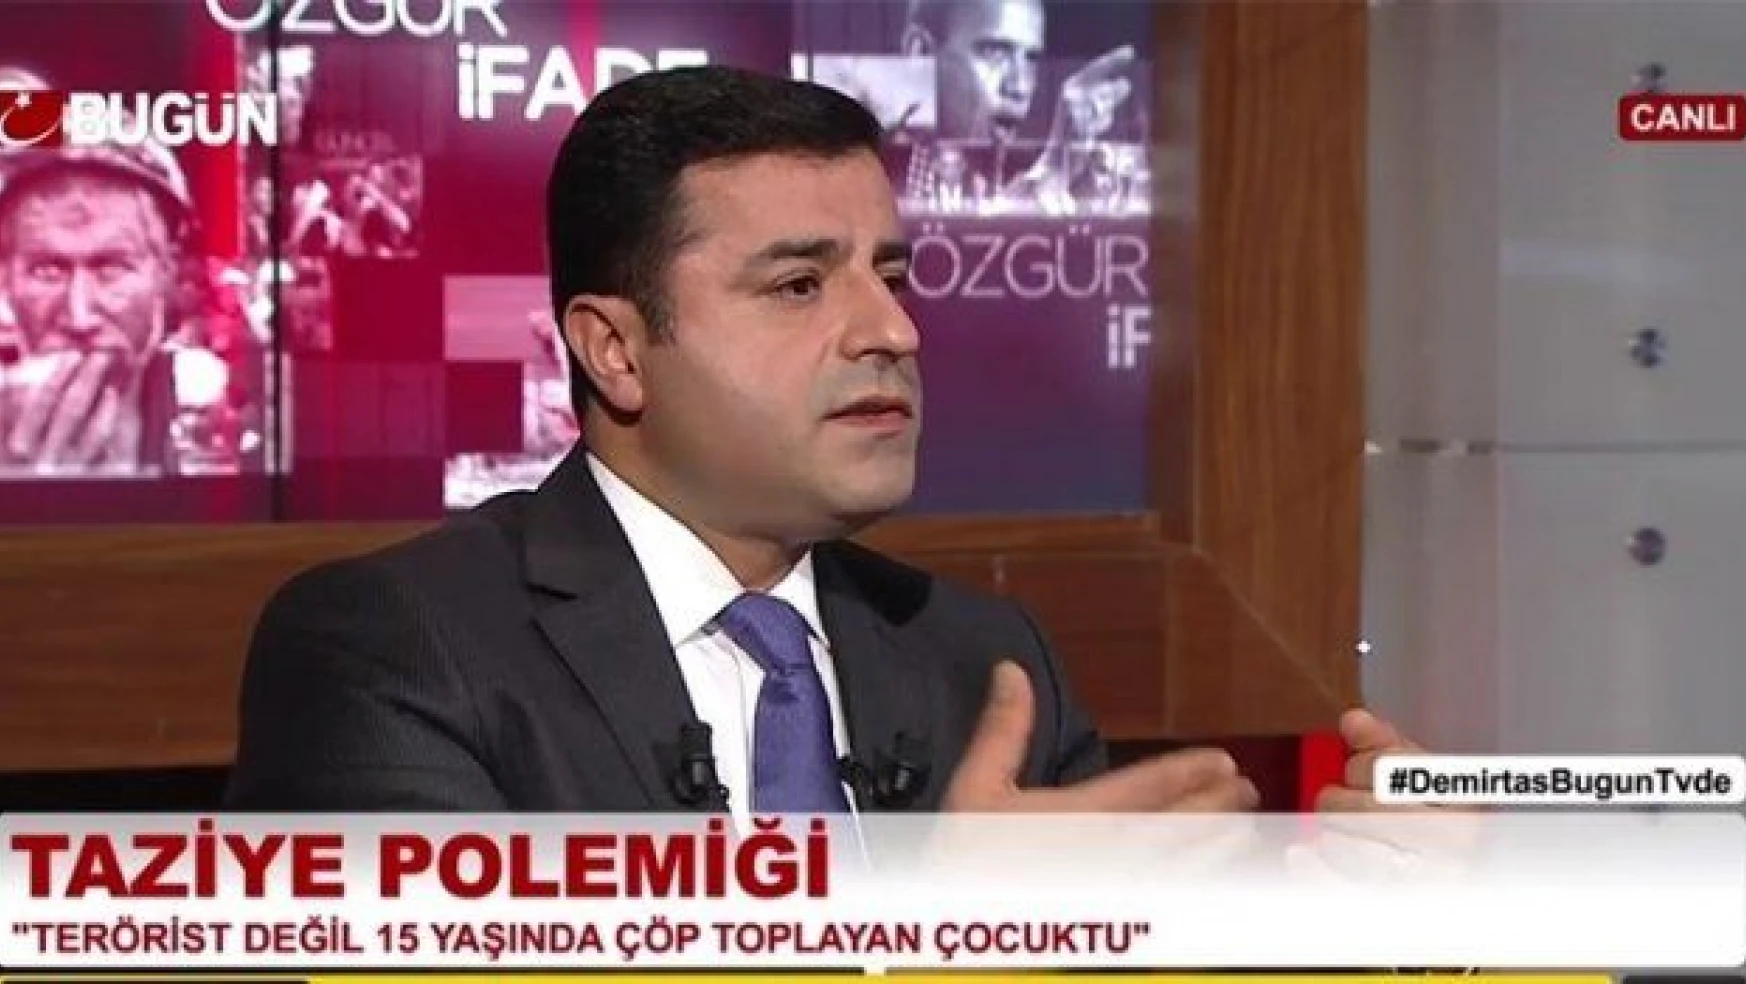 Gülen destekçisi kanalda Selahattin Demirtaş şov!